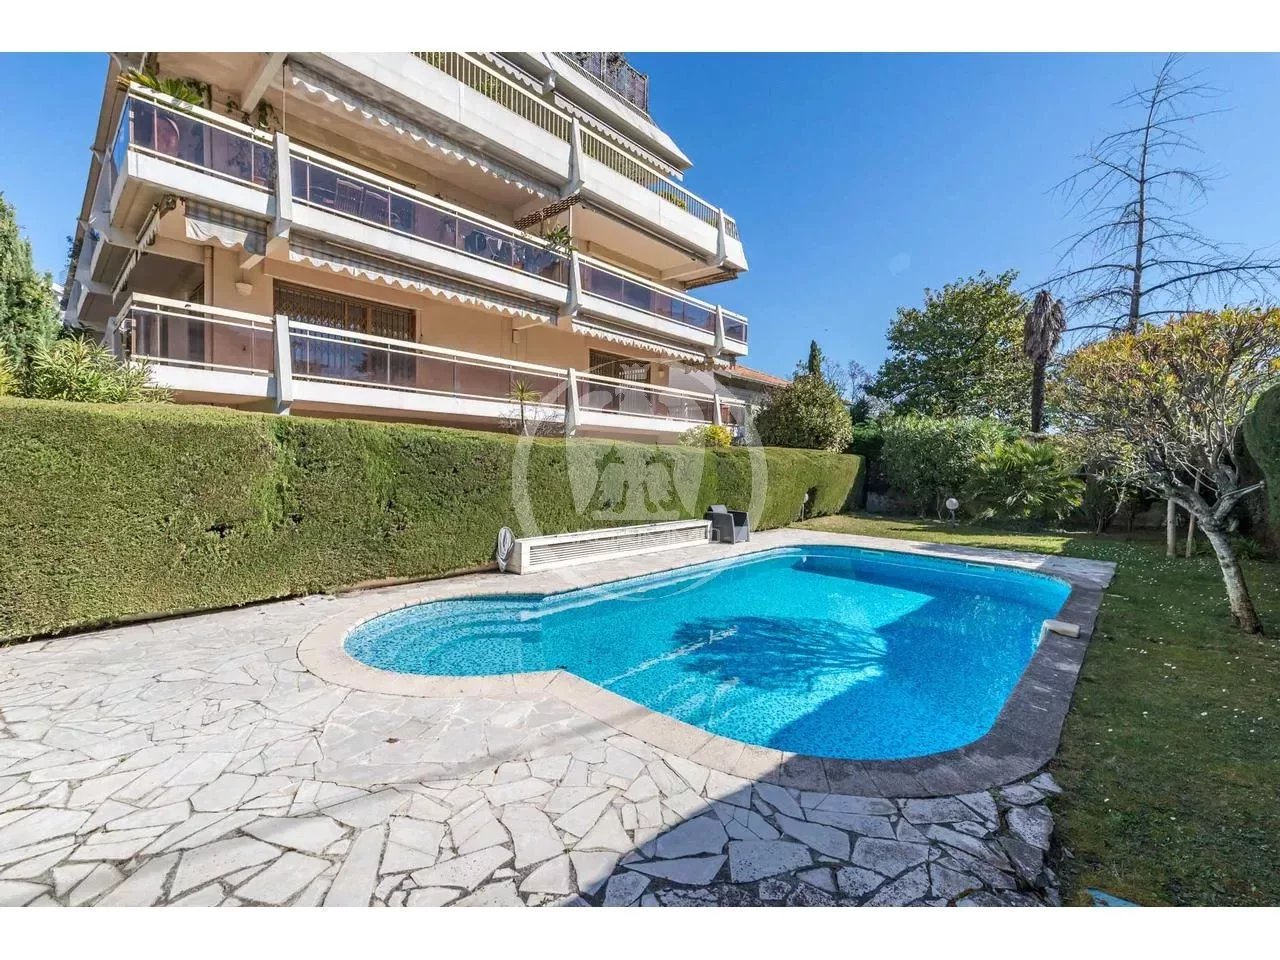 Nice Cimiez 3 pièces 80m² rénové résidence avec piscine